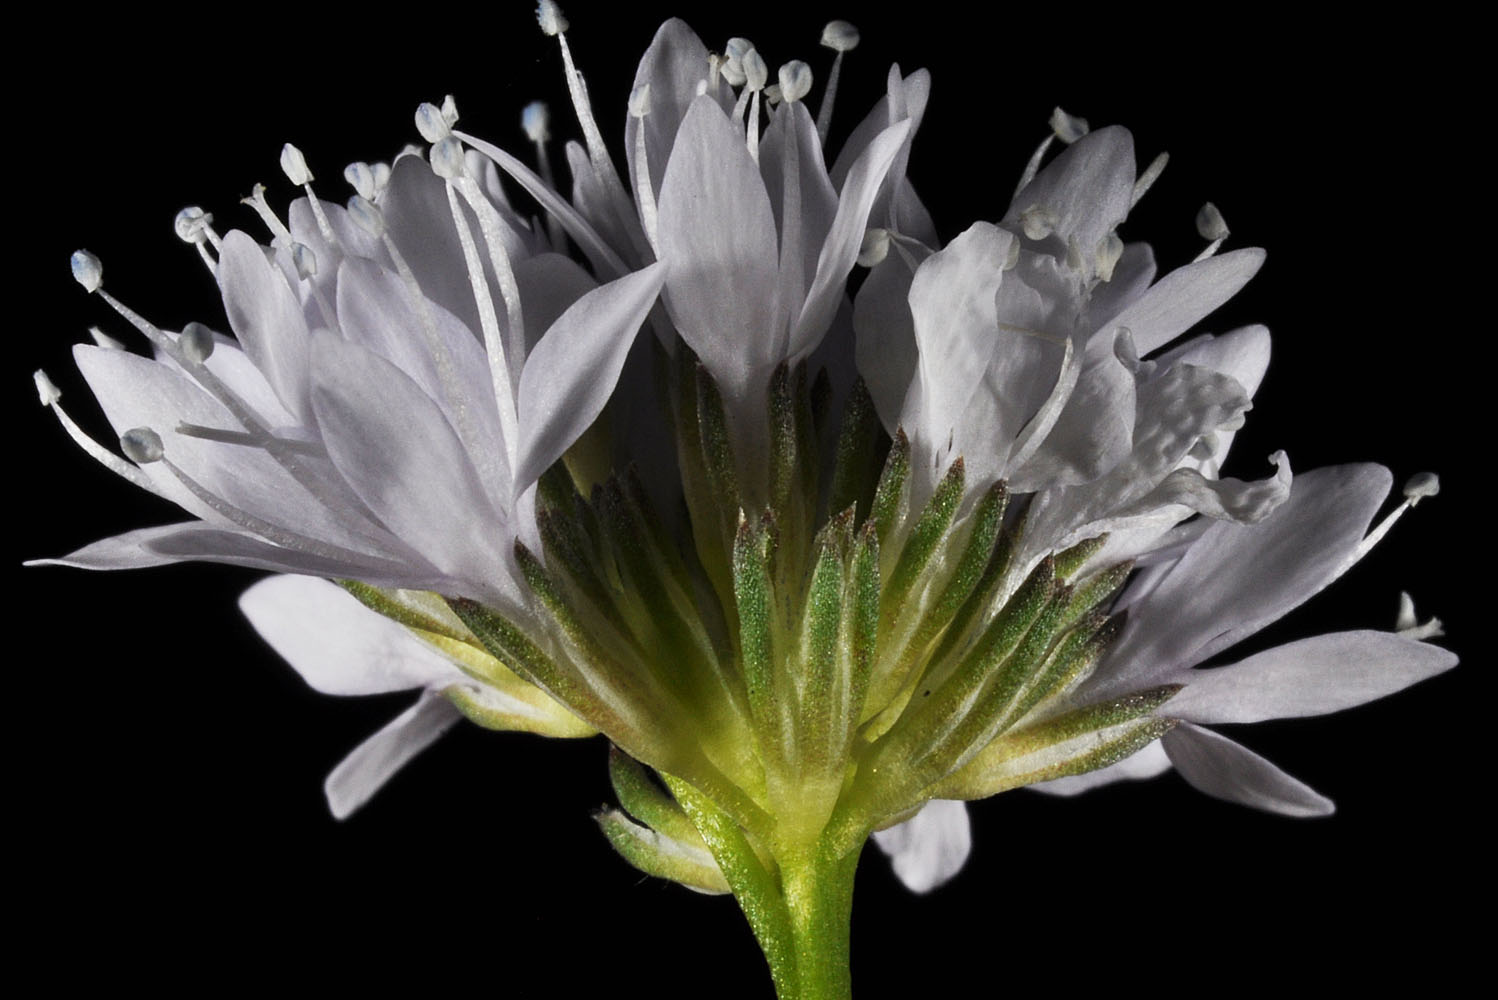 Flora of Eastern Washington Image: Gilia capitata